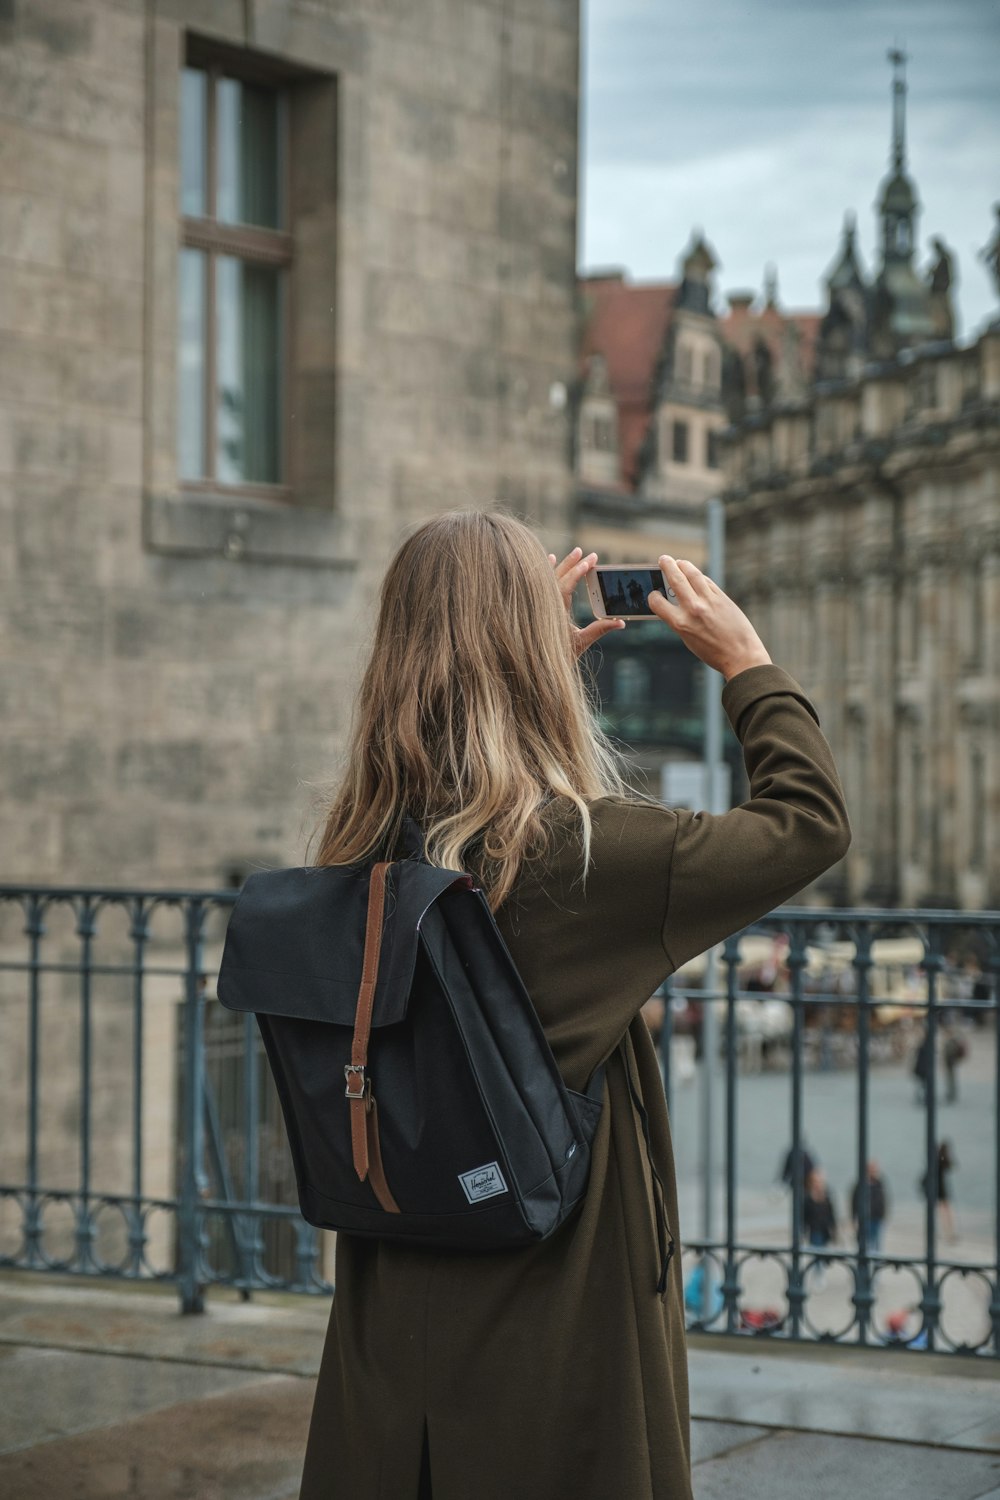 검은 DSLR 카메라를 사용하여 사진을 찍는 회색 재킷을 입은 여자